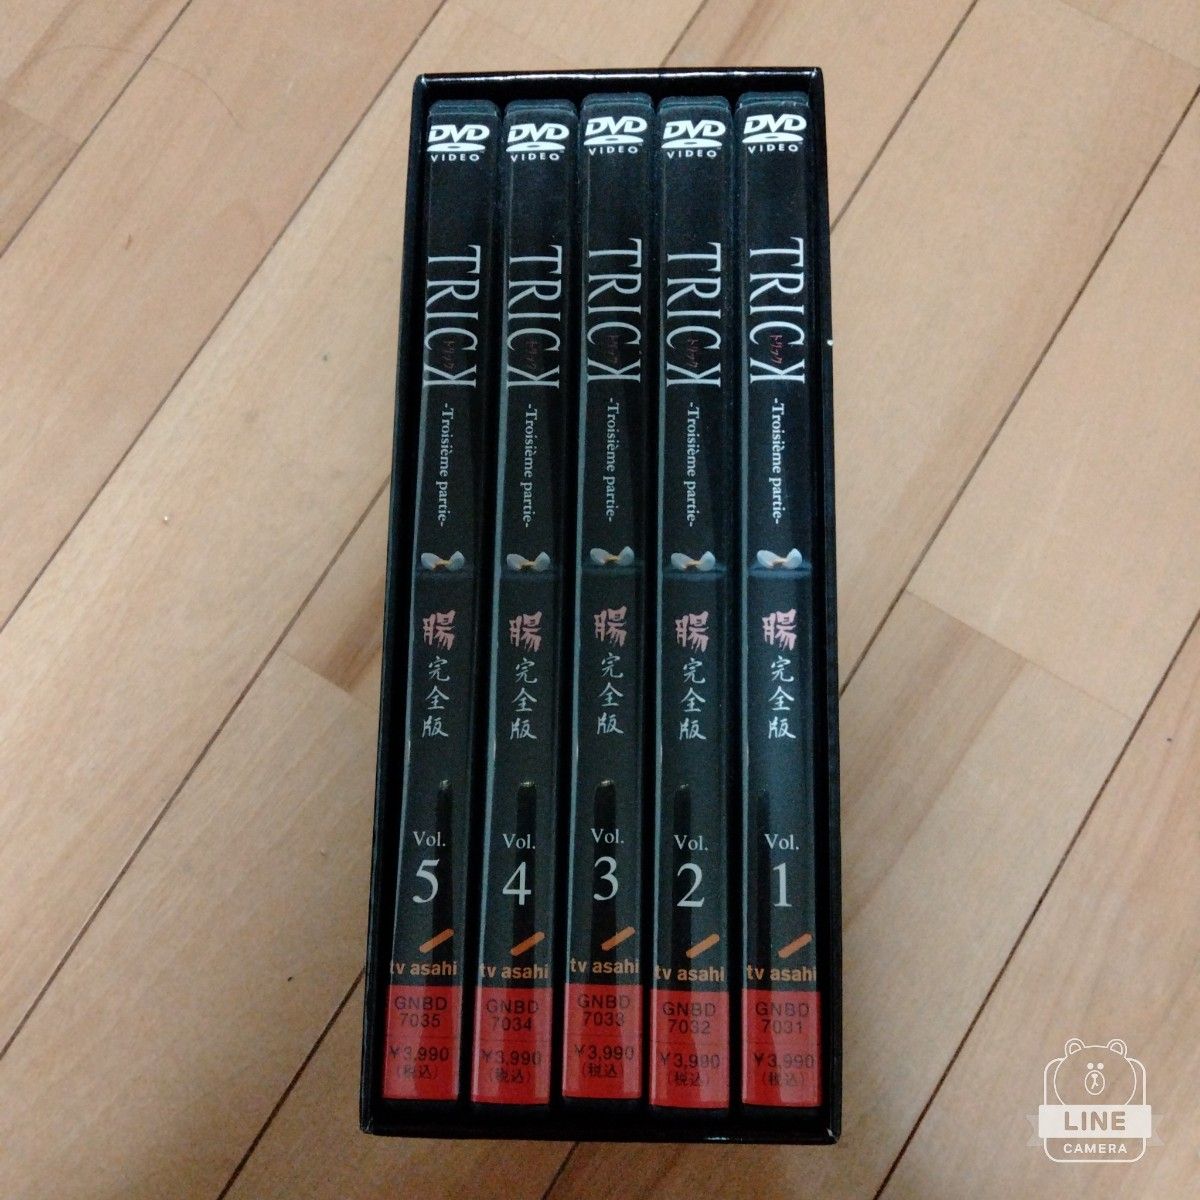 トリック-Troisieme partie- 腸完全版 DVD-BOX〈10枚